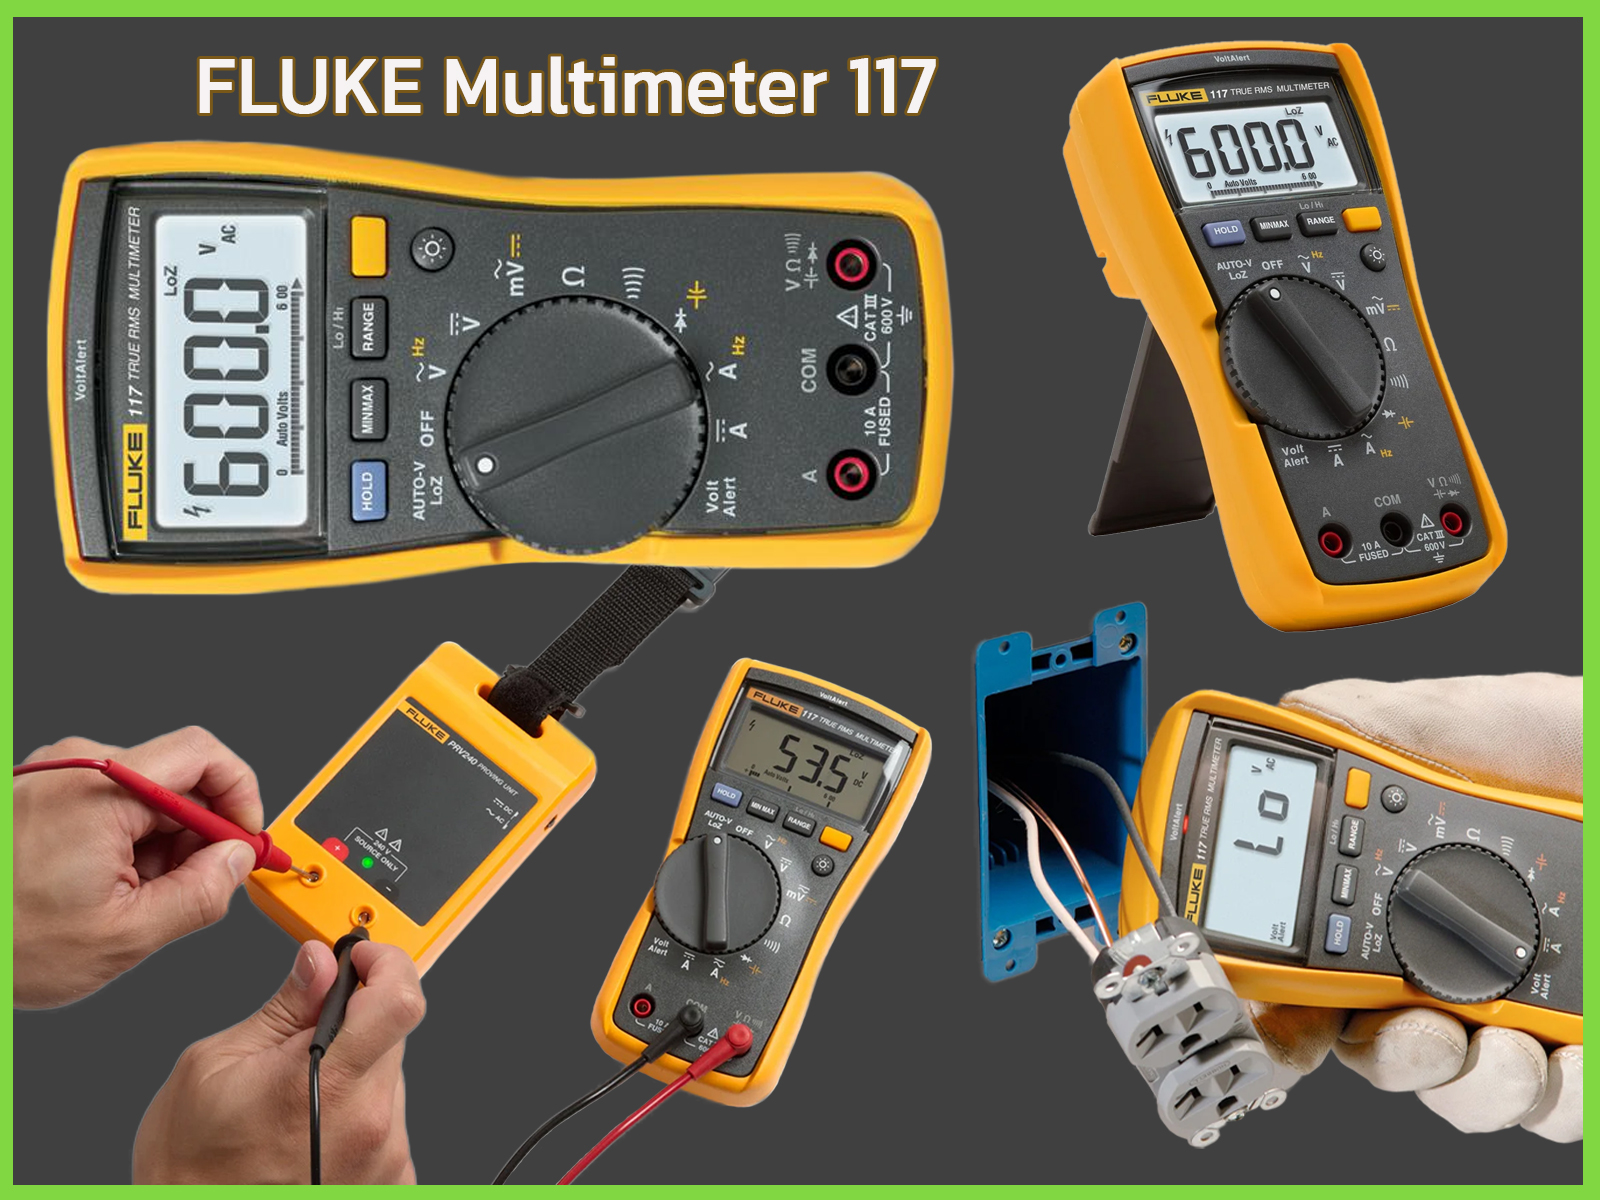 FLUKE Multimeter 117